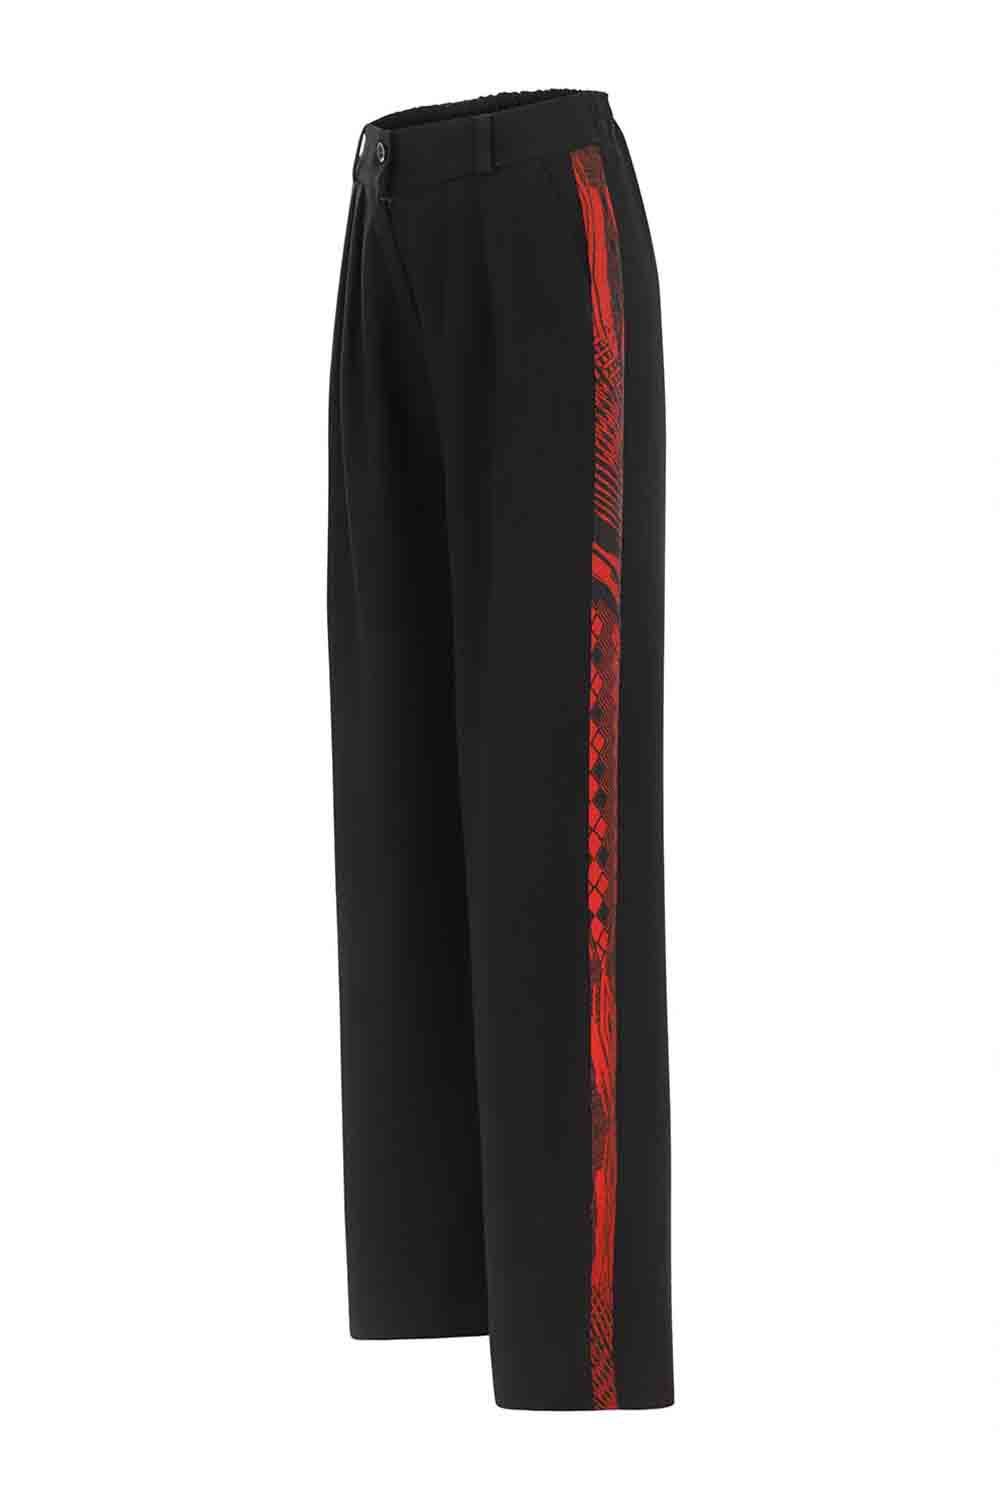 Sinem Babacan - Garni Detaylı Zayıf Gösteren Pileli Pantolon Siyah 5